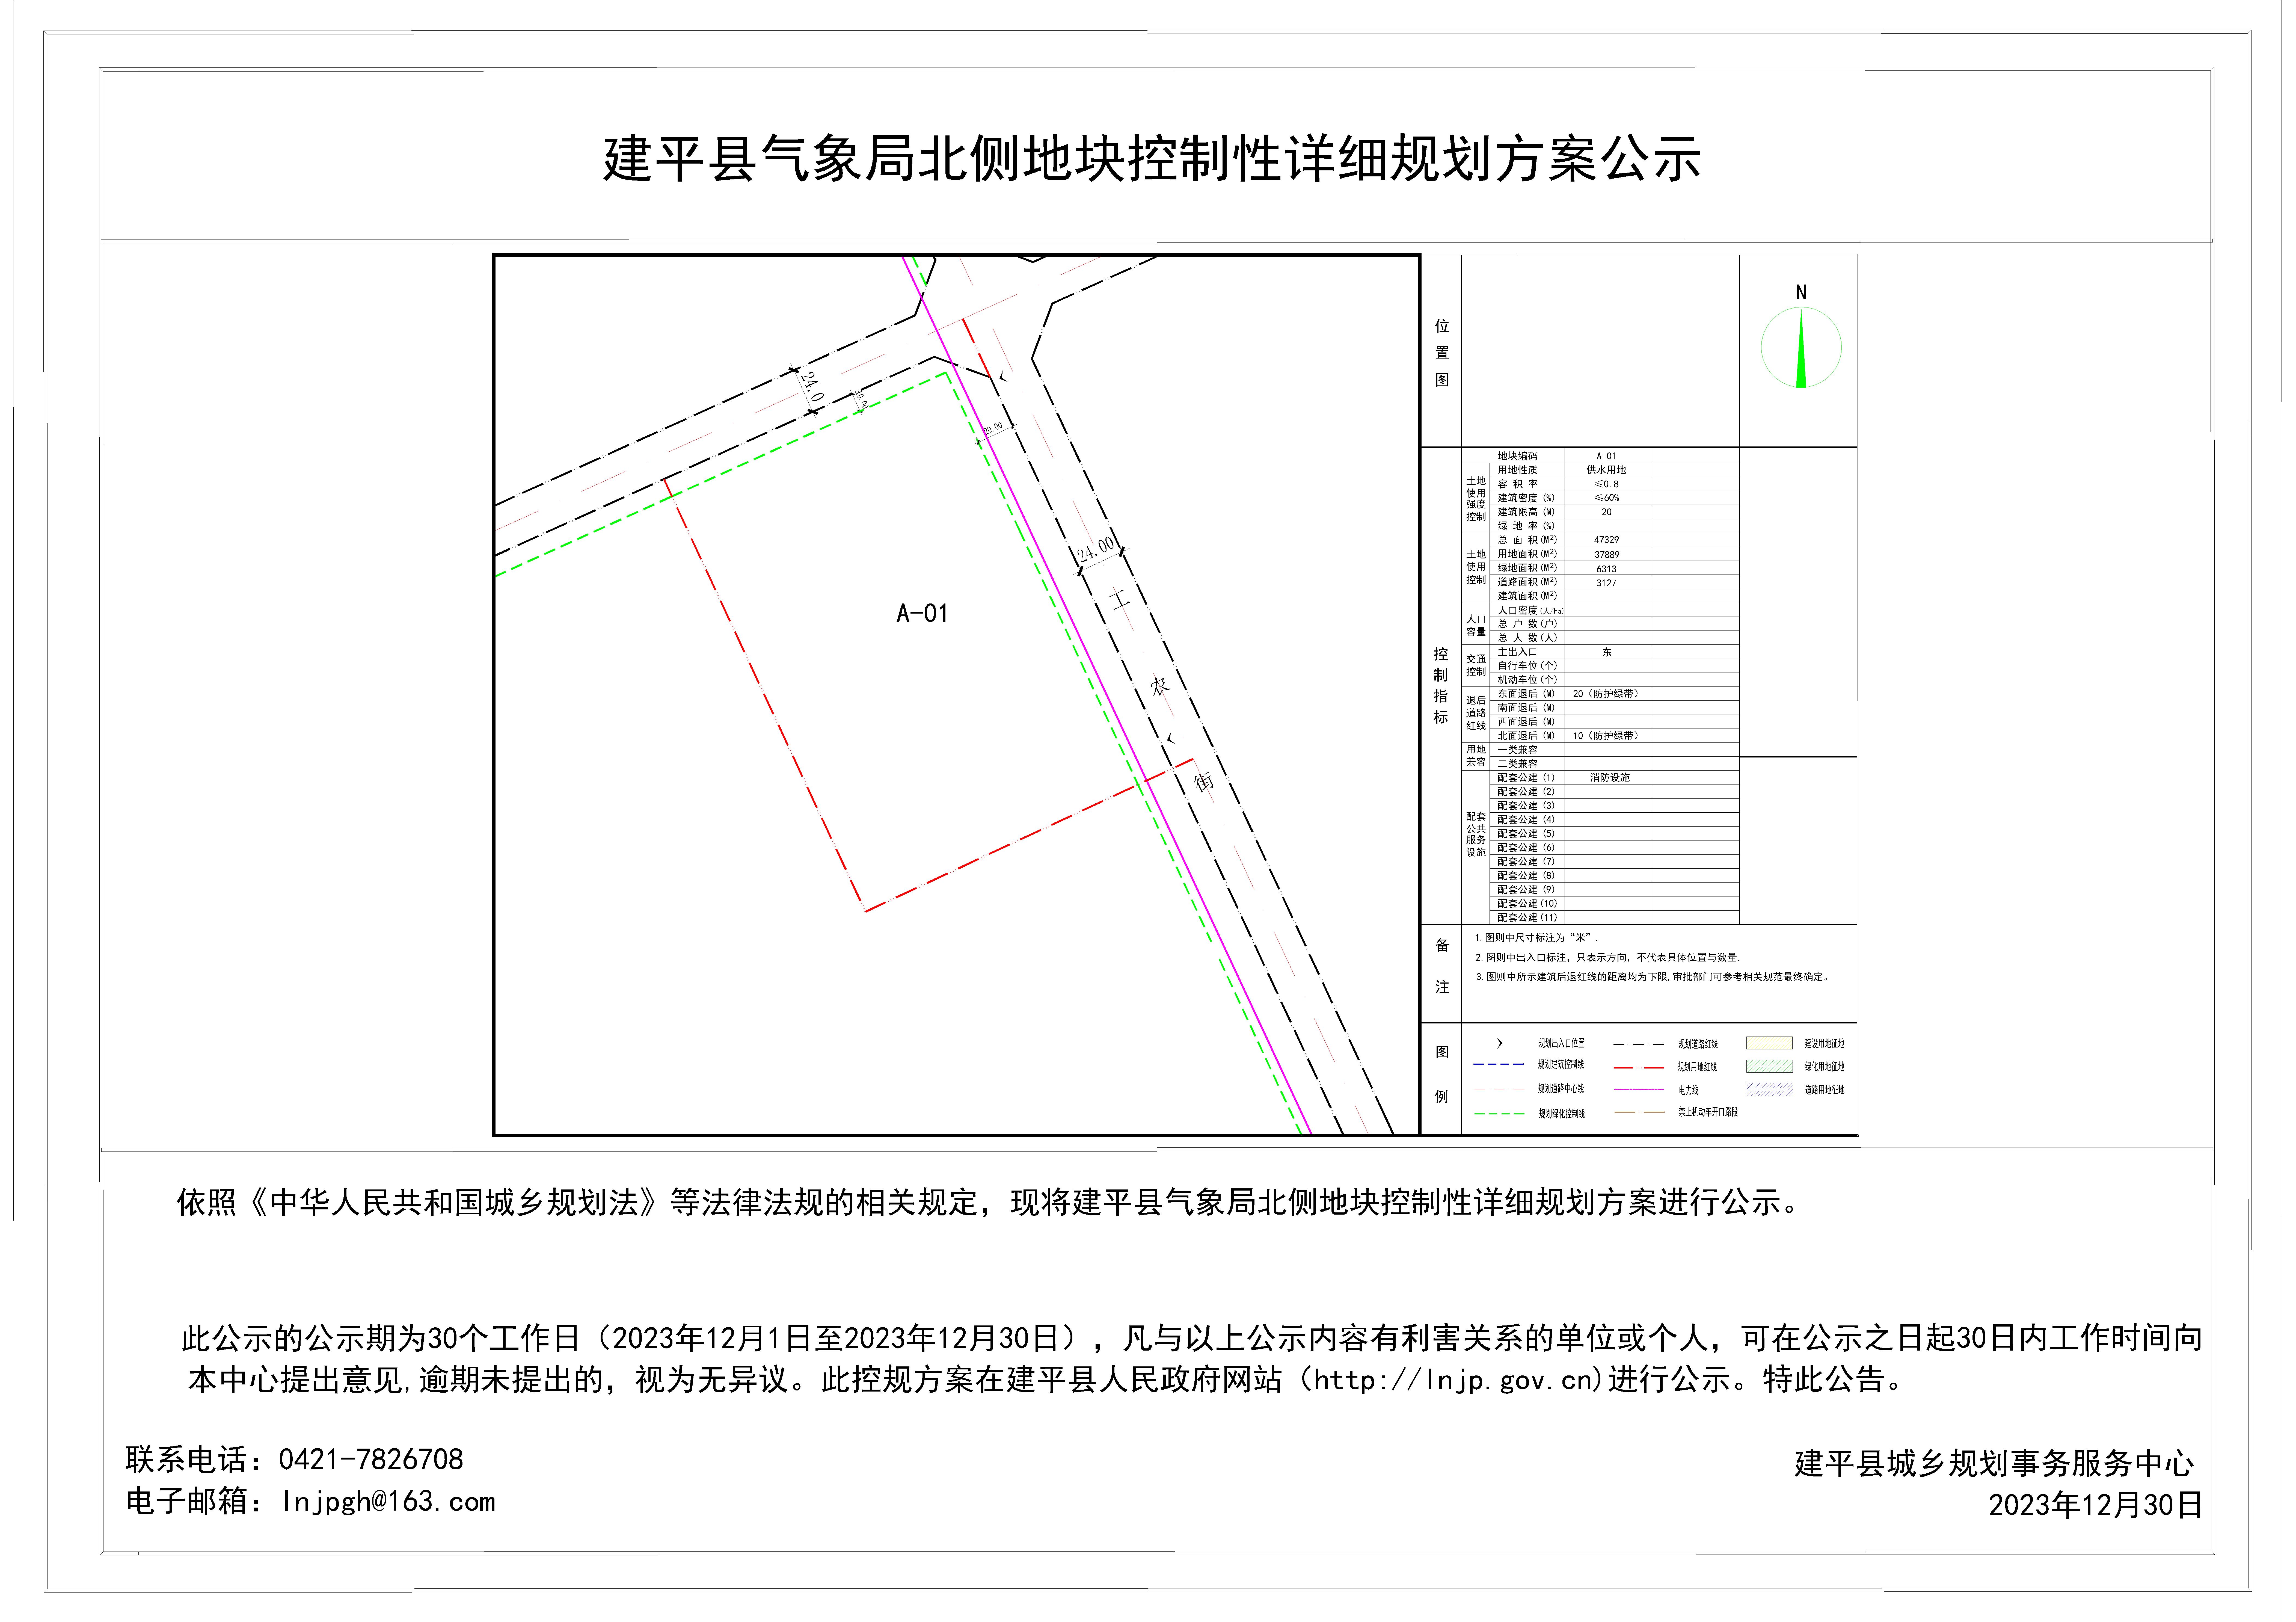 建平县气象局北侧地块控制性详细规划方案公示(终）-Model.jpg